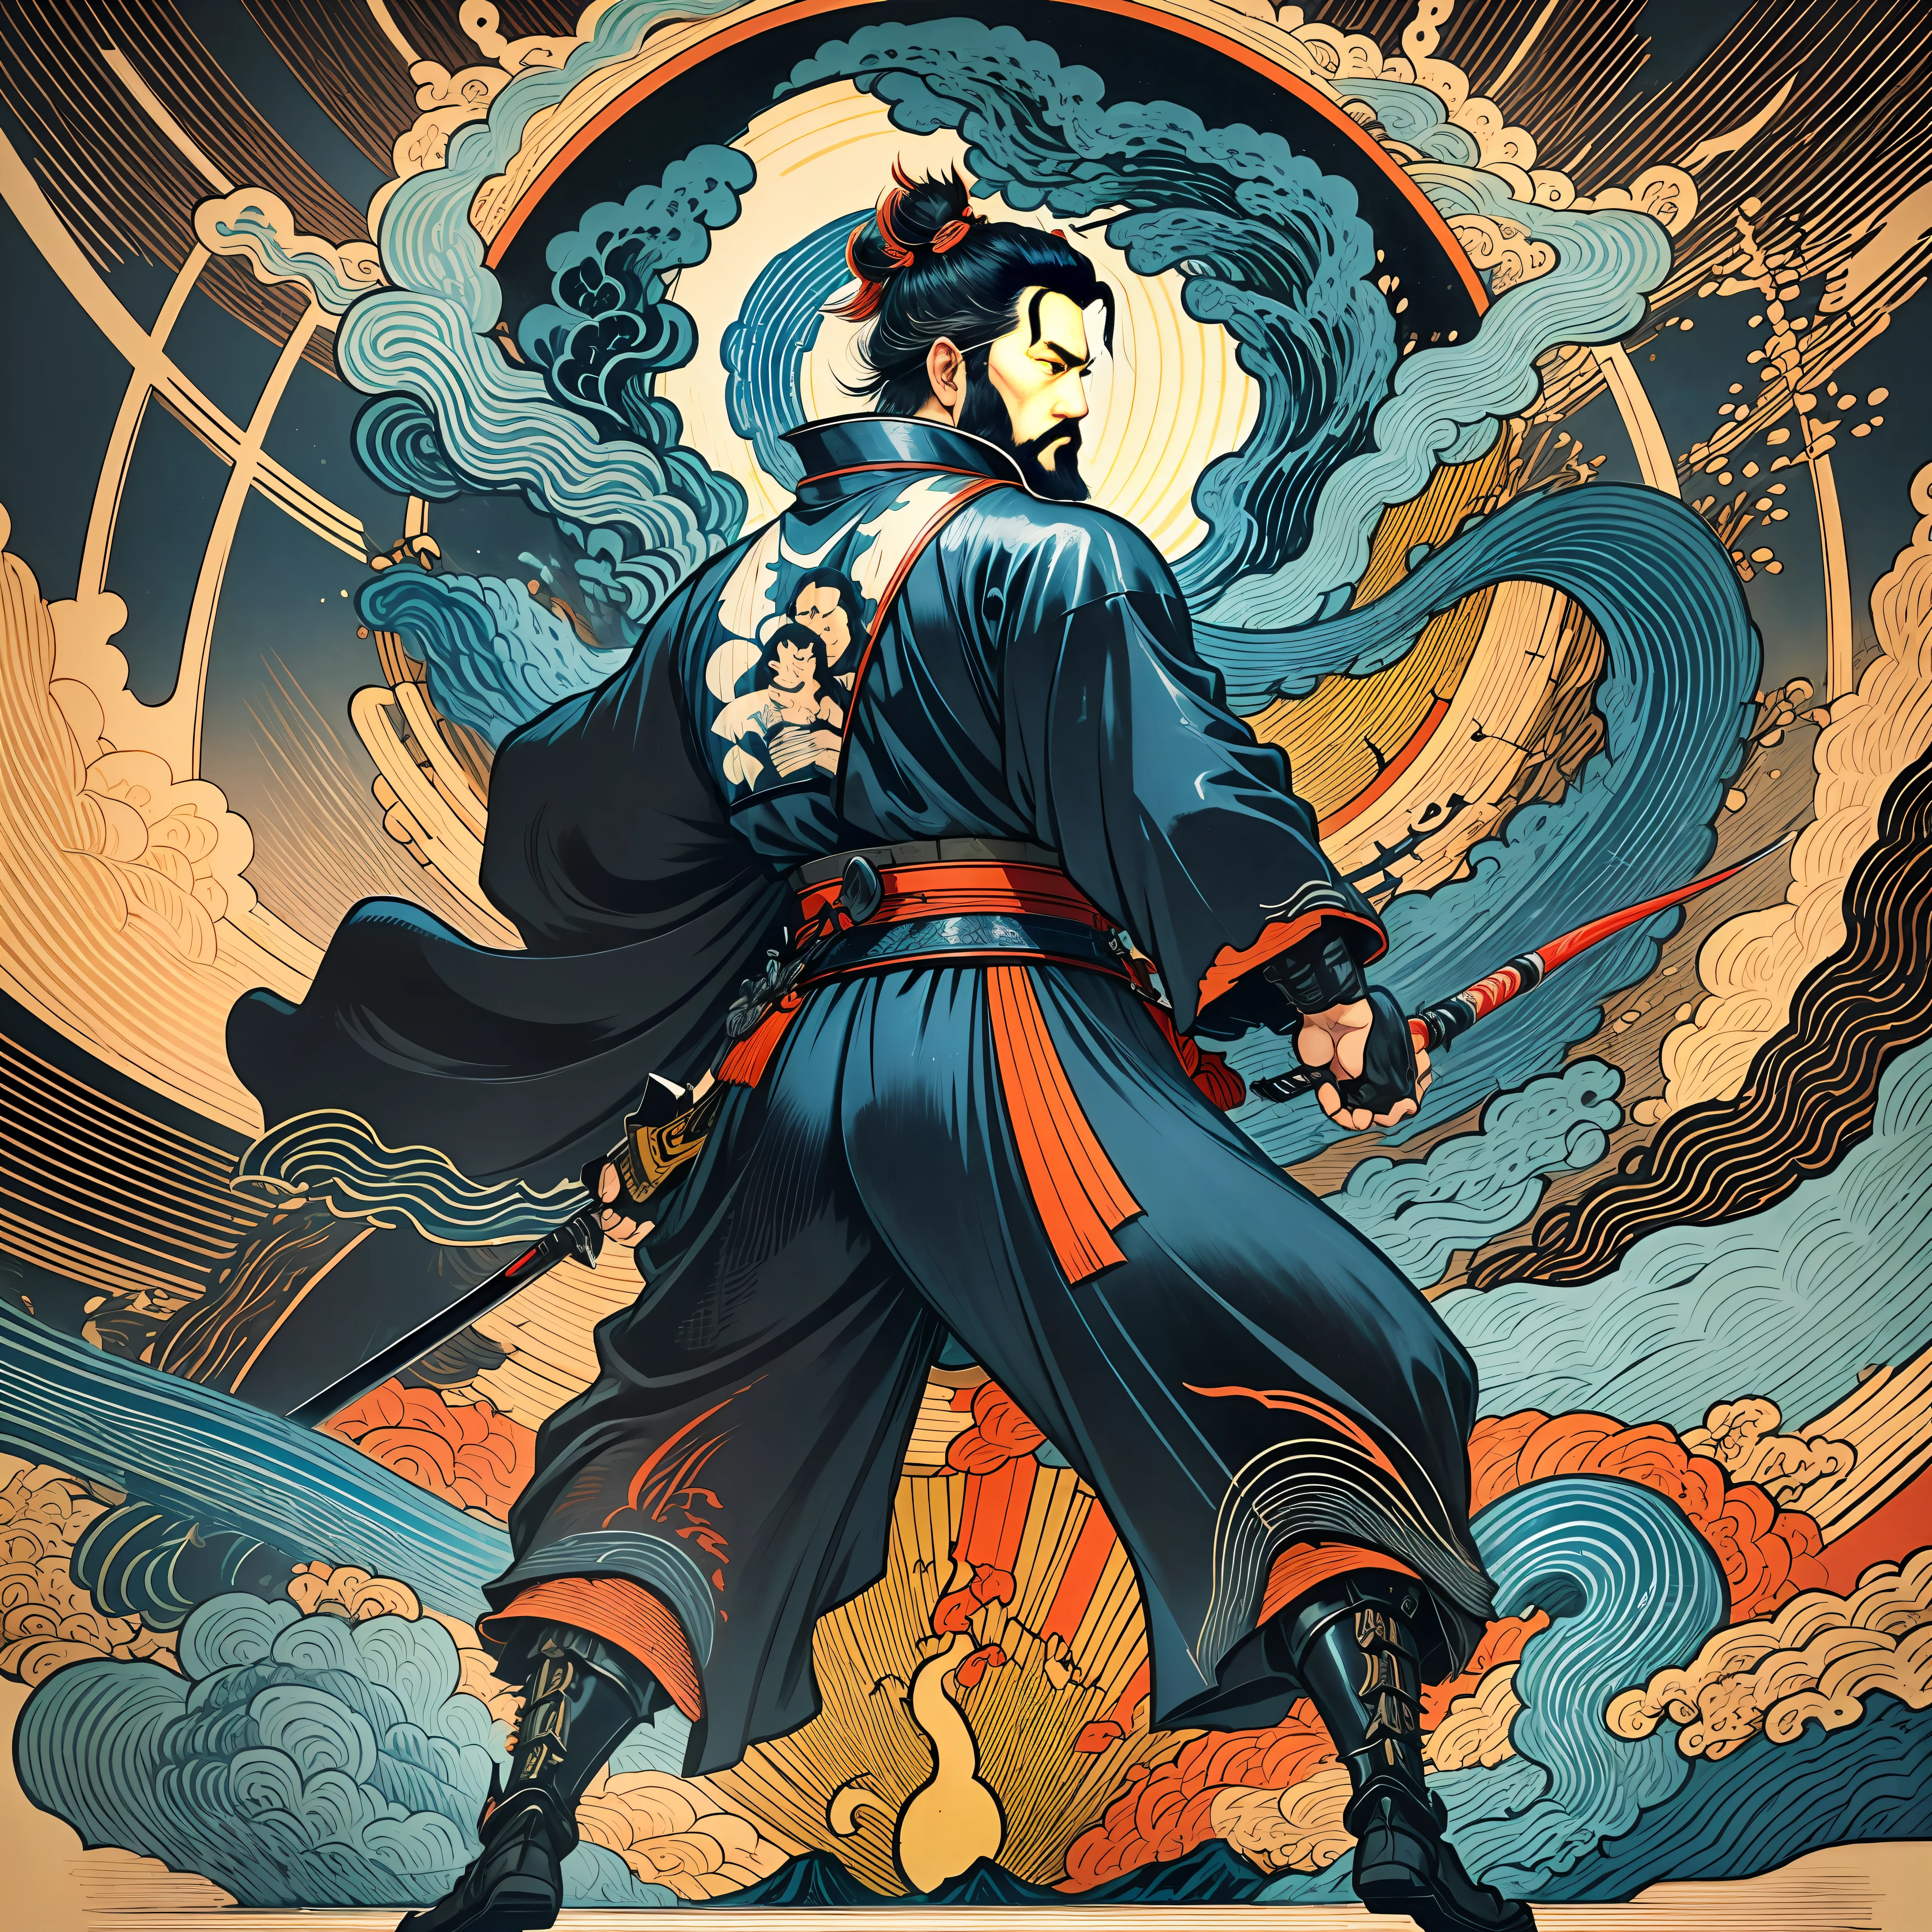 Il s&#39;agit d&#39;une peinture corporelle complète aux couleurs naturelles avec des dessins au trait de style Katsushika Hokusai.. L&#39;épéiste Miyamoto Musashi a un grand corps comme un homme fort. Samouraï du Japon. Avec une expression de détermination digne mais virile, il affronte les mauvais esprits. Il a les cheveux noirs courts et une coupe courte, barbe taillée. Le haut de son corps est recouvert d&#39;un kimono noir de jais à la texture brillante., et son hakama arrive jusqu&#39;aux genoux. Dans sa main droite, il tient une épée japonaise avec une partie d&#39;épée plus longue.. Dans la plus haute qualité, chef-d&#39;œuvre haute résolution de style ukiyo-e, éclairs et flammes tourbillonnantes. Parmi eux, Miyamoto Musashi est debout, le dos droit, face à l&#39;avant.